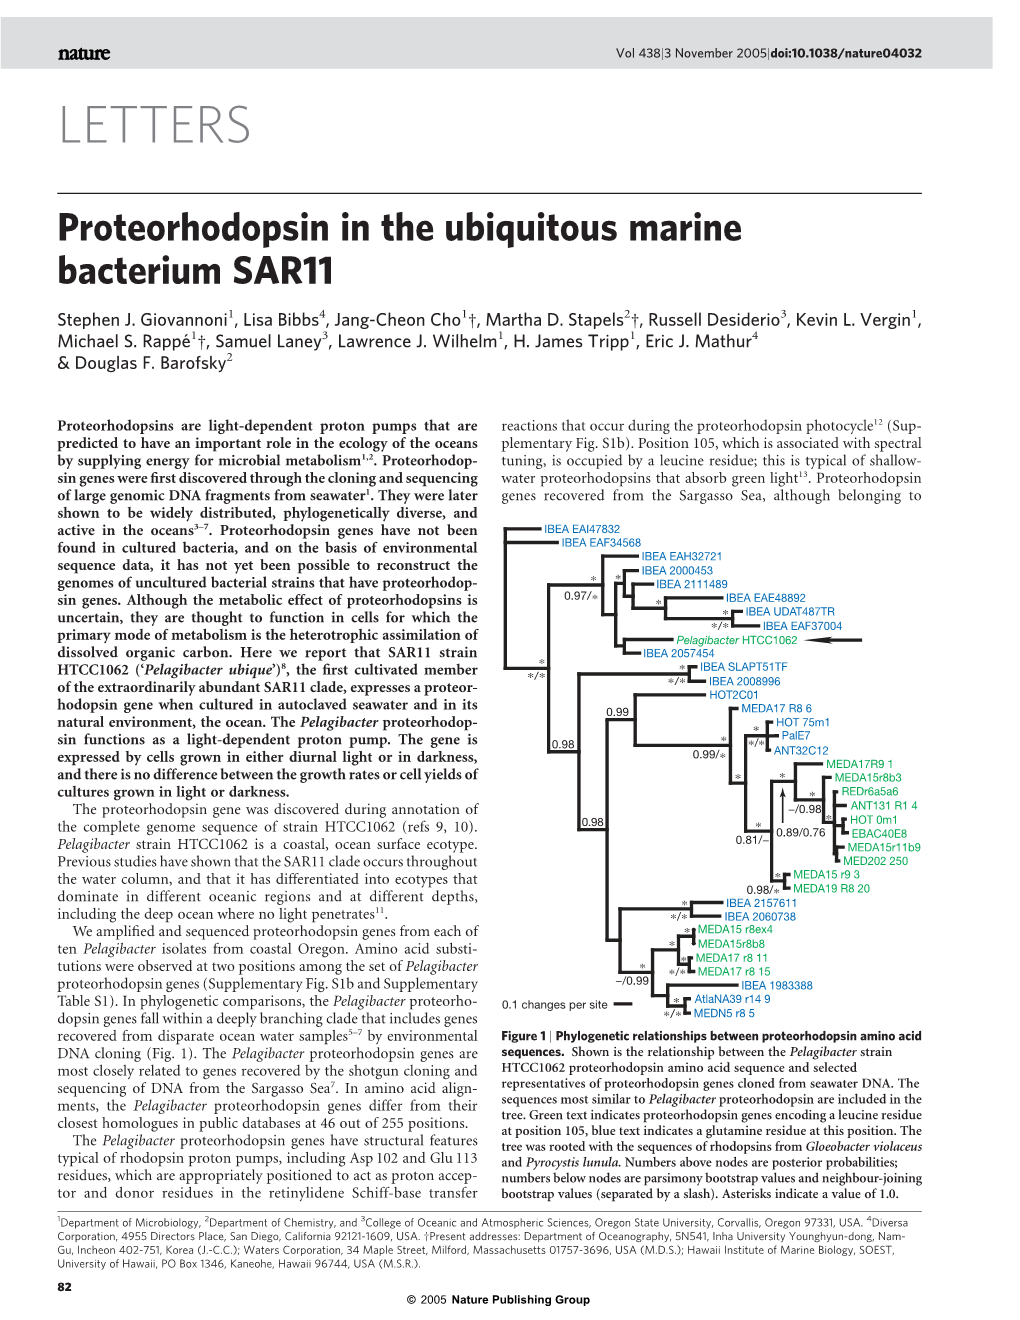 Proteorhodopsin in the Ubiquitous Marine Bacterium SAR11